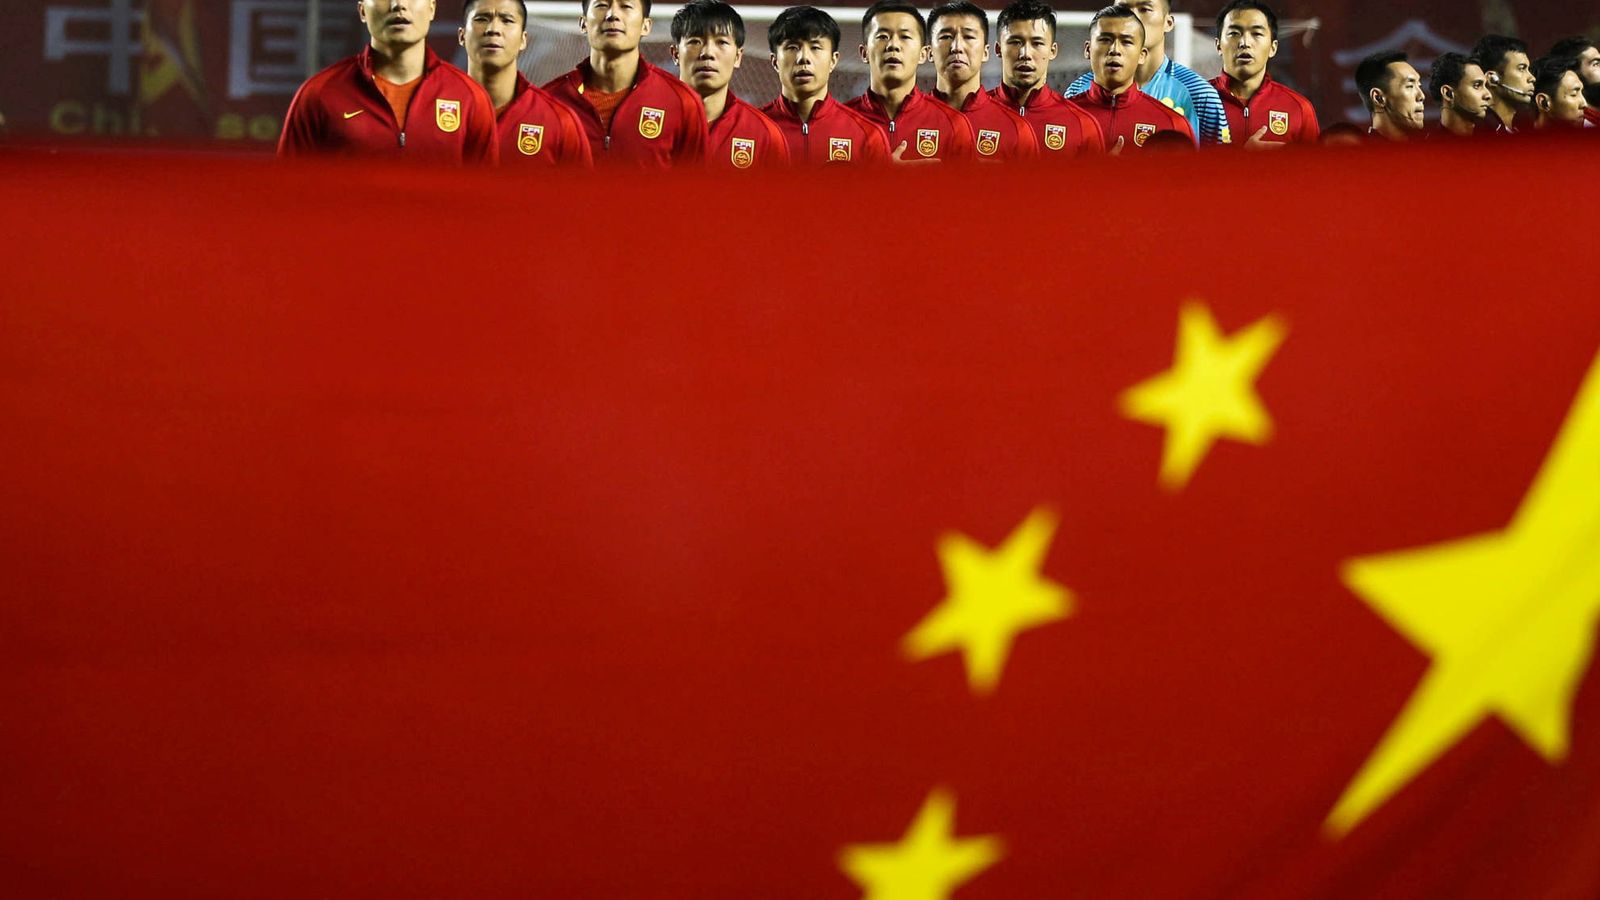 Foto: La selección de China suma fracasos sin parar en los últimos años (Reuters)